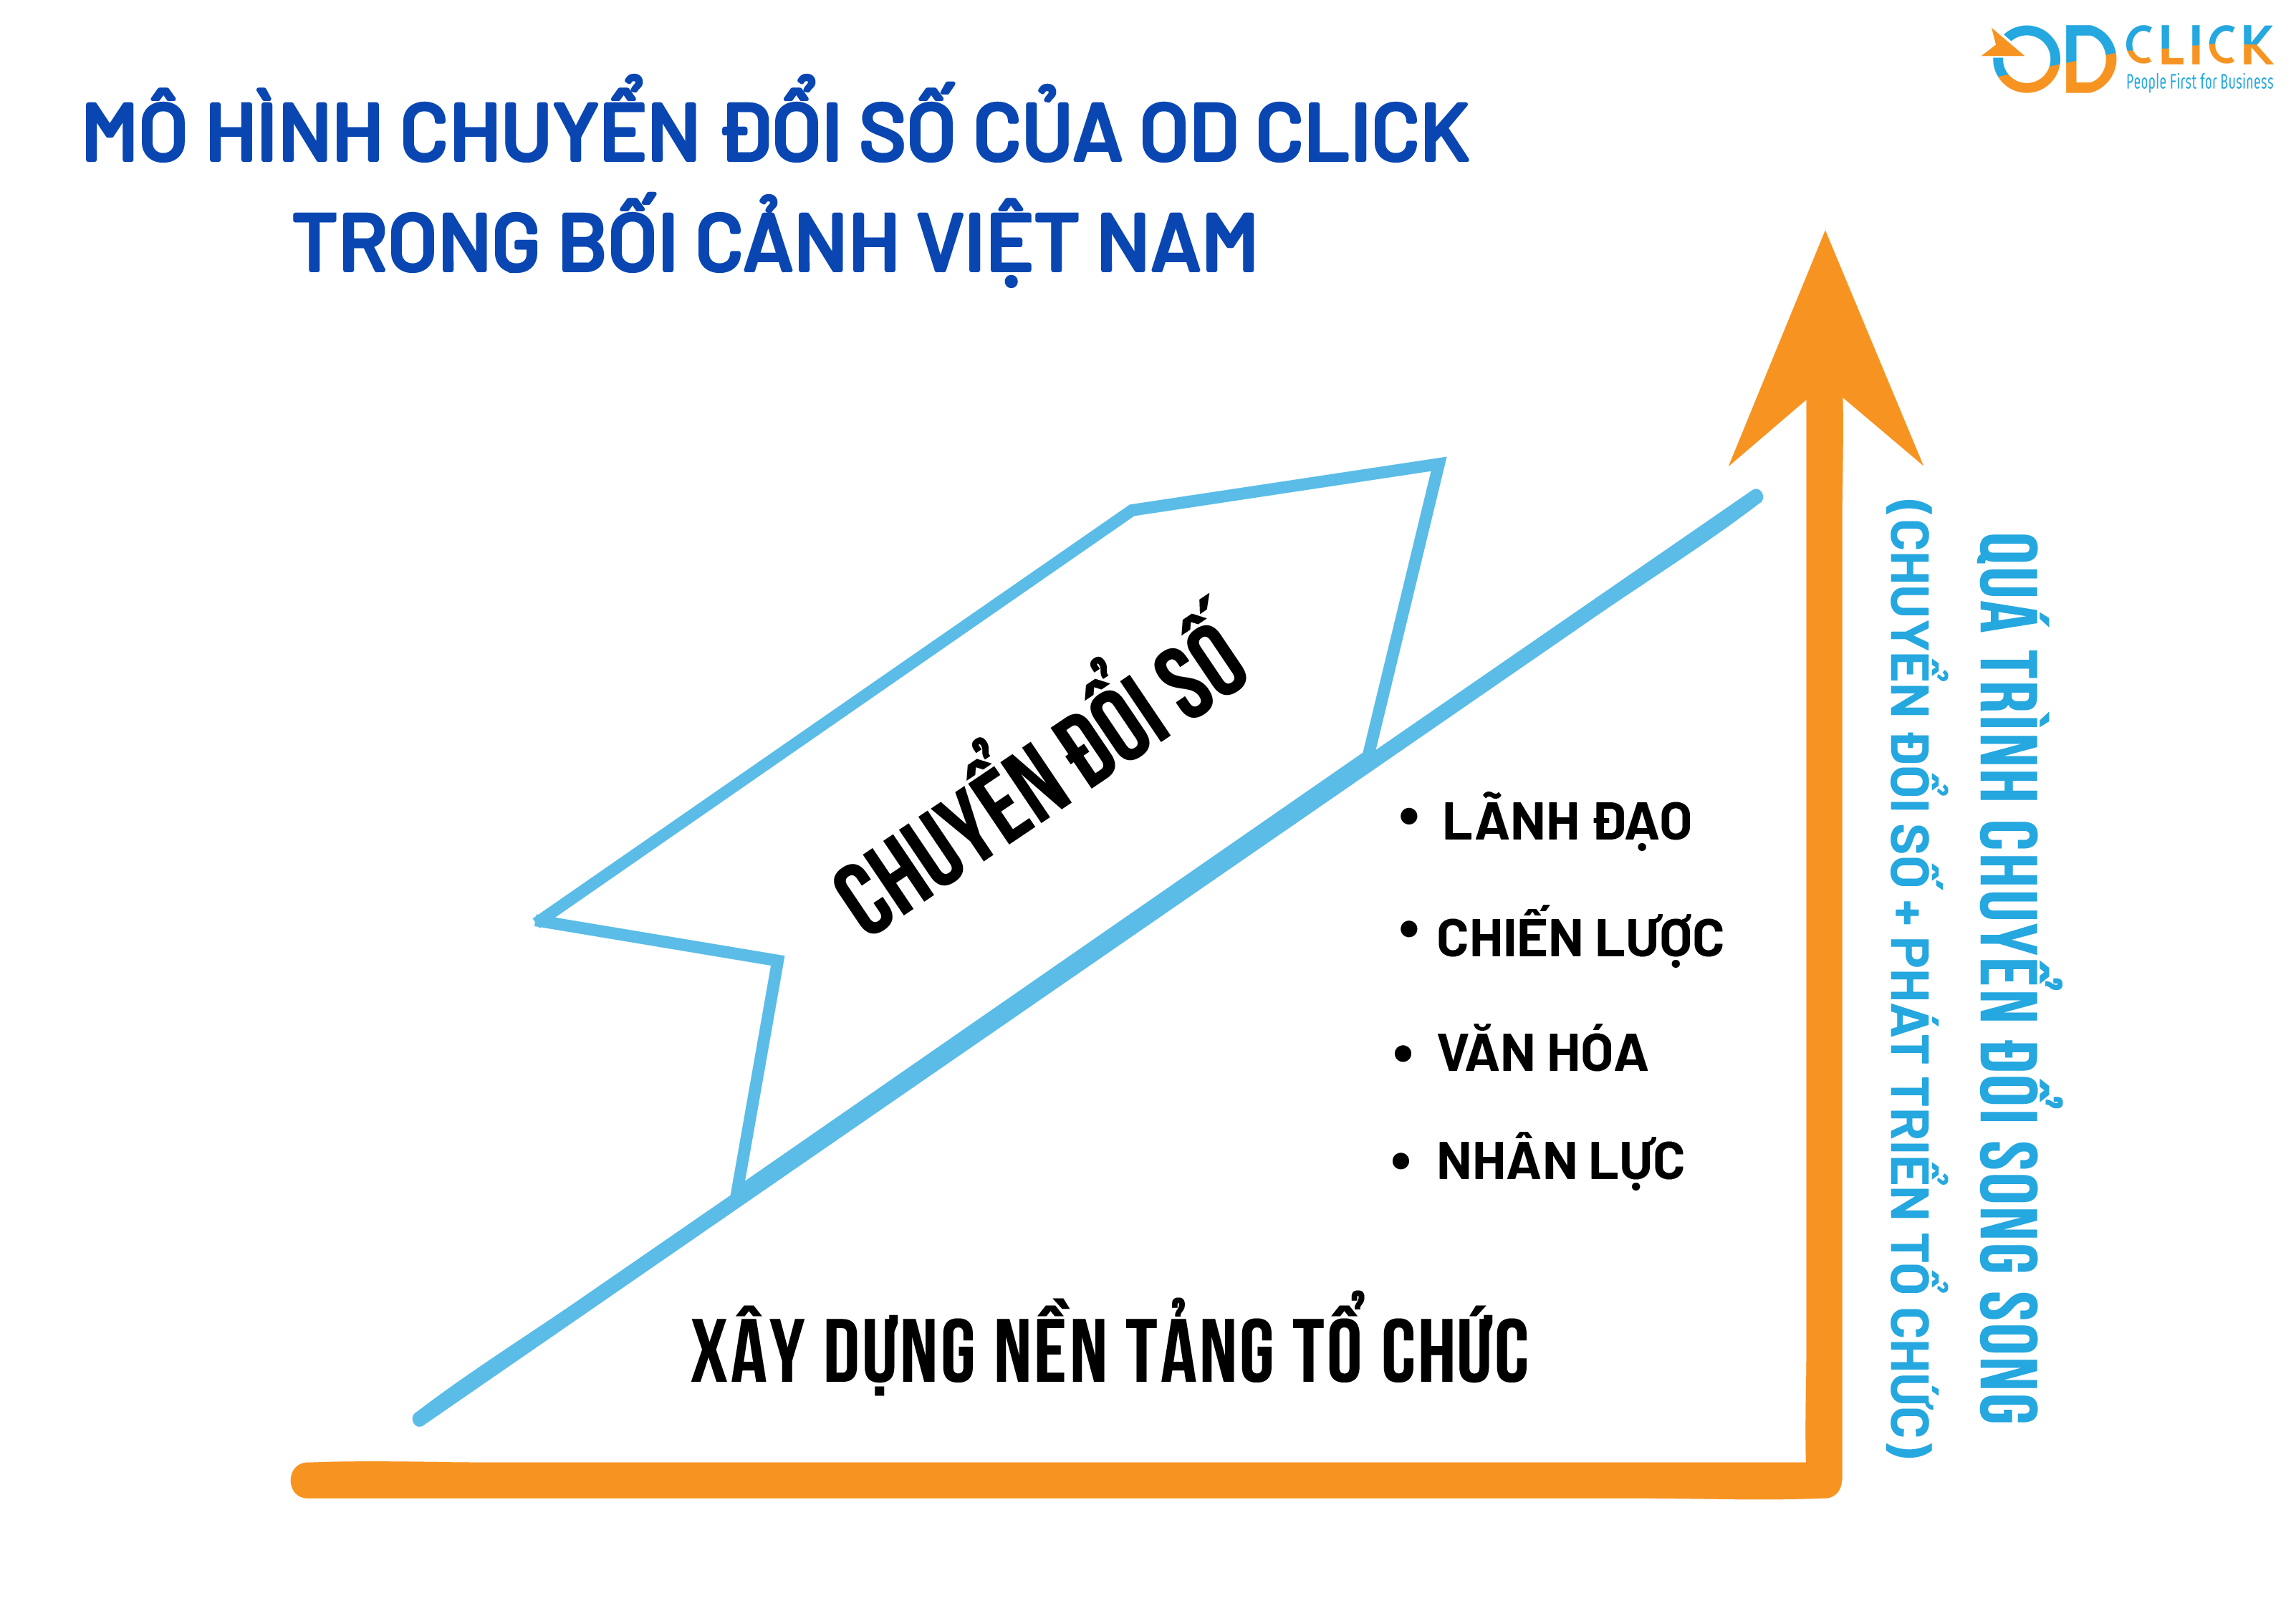 Chuyển đổi số giúp doanh nghiệp xoay chuyển mô hình kinh doanh  Thời báo  Tài chính Việt Nam